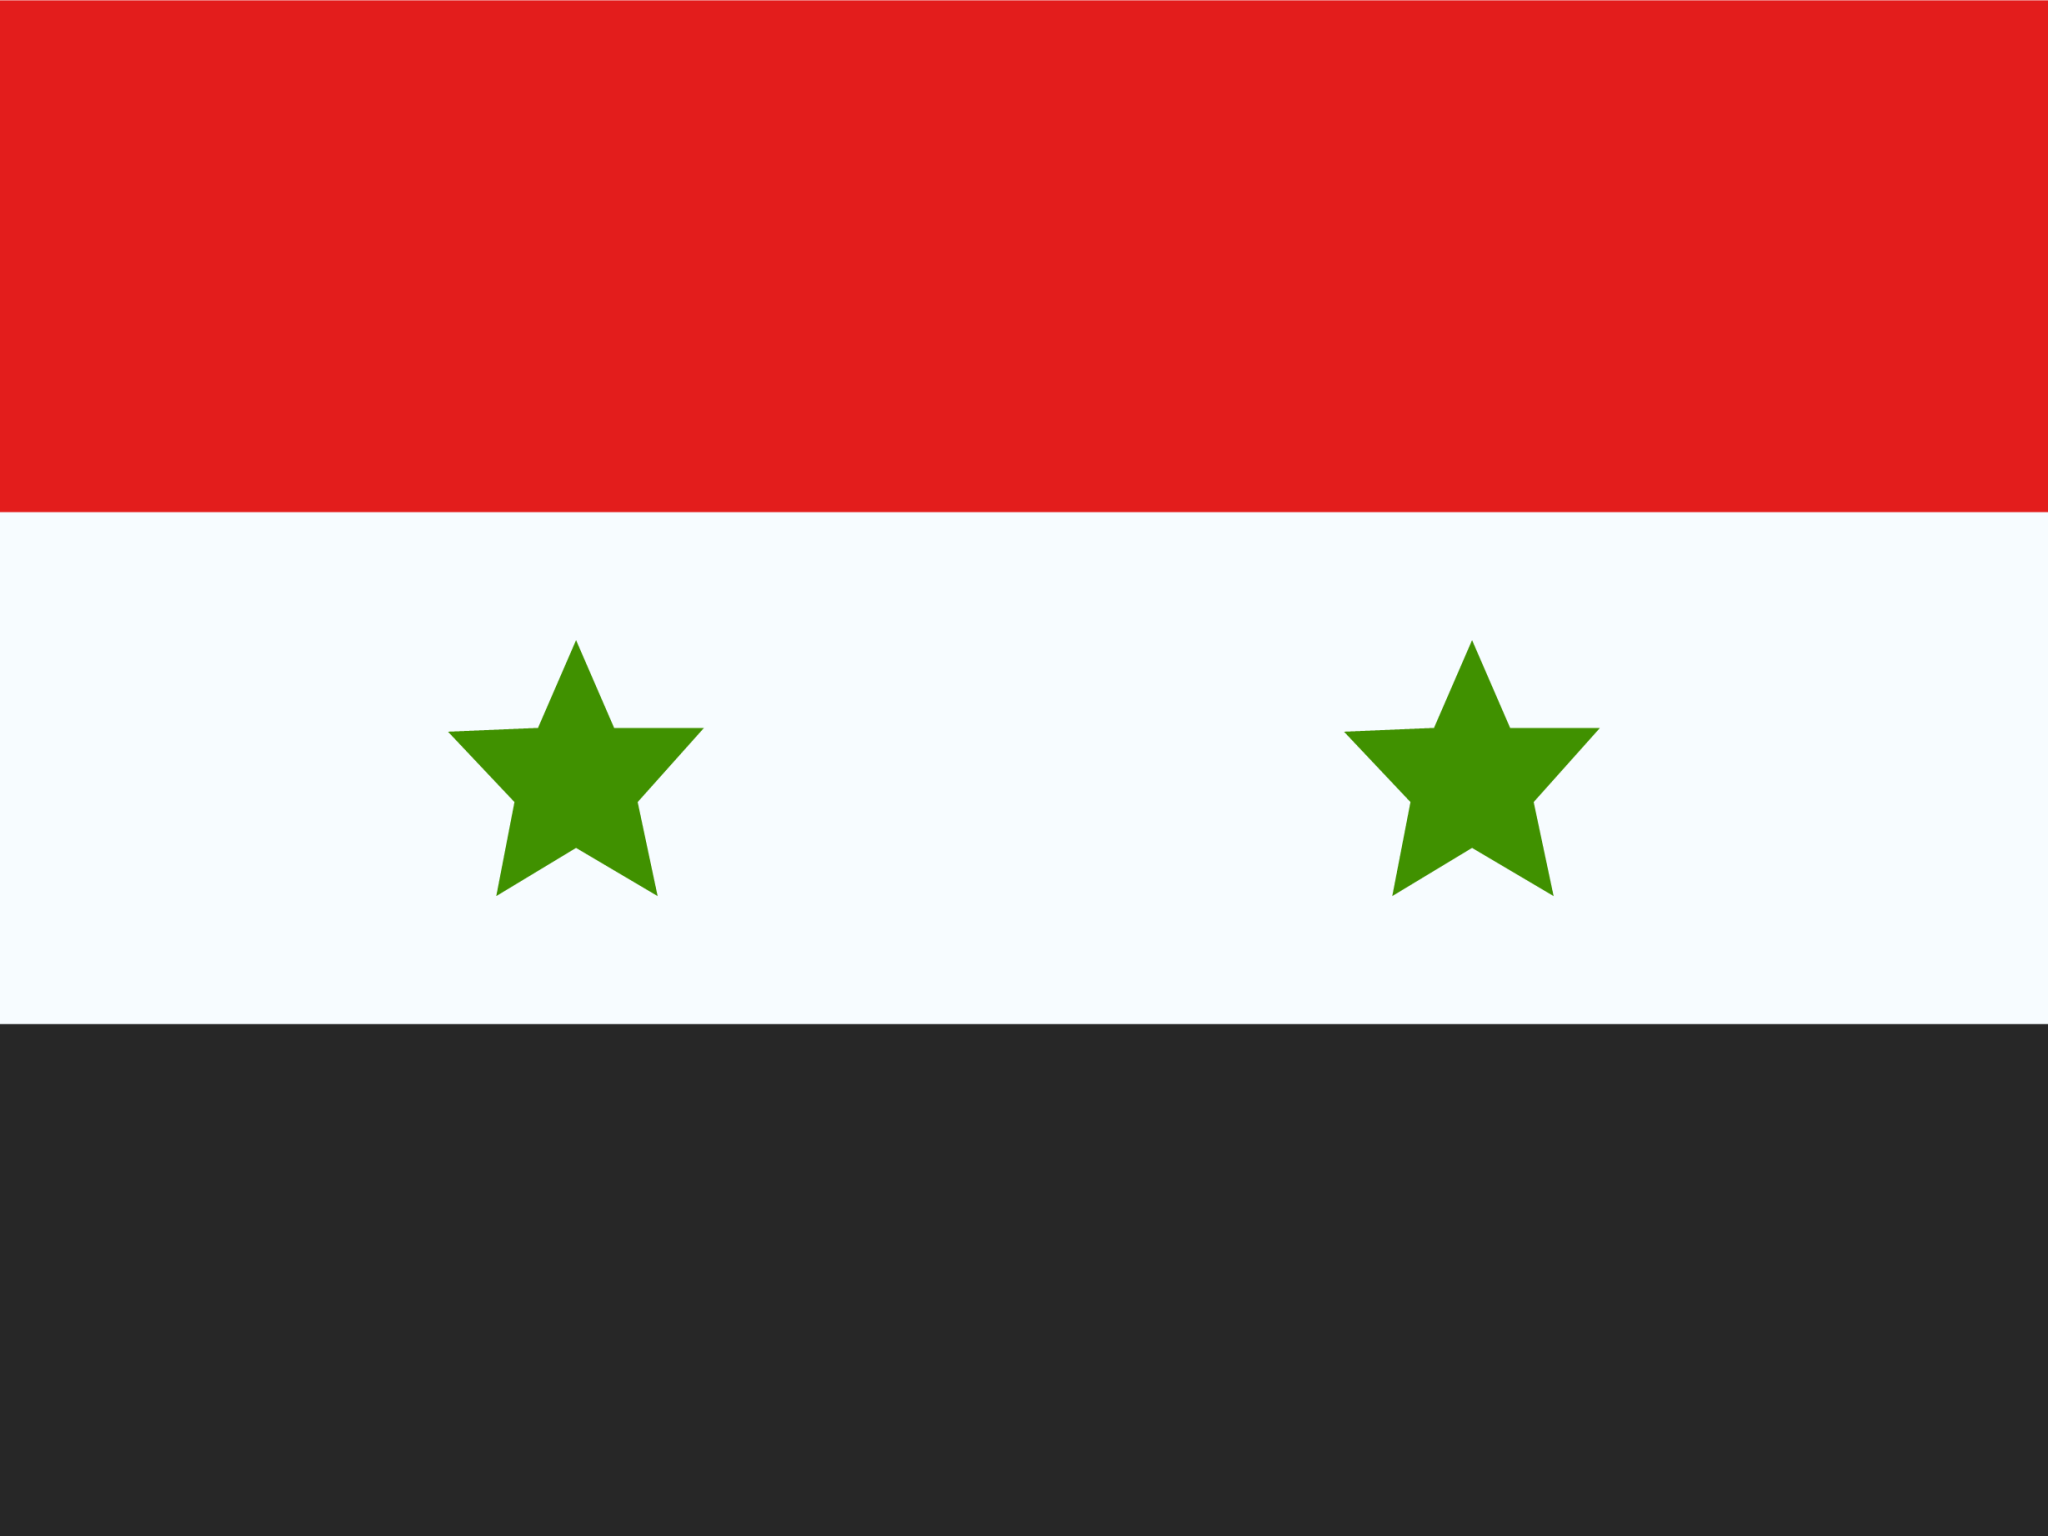 Syrian Arab Republic icon